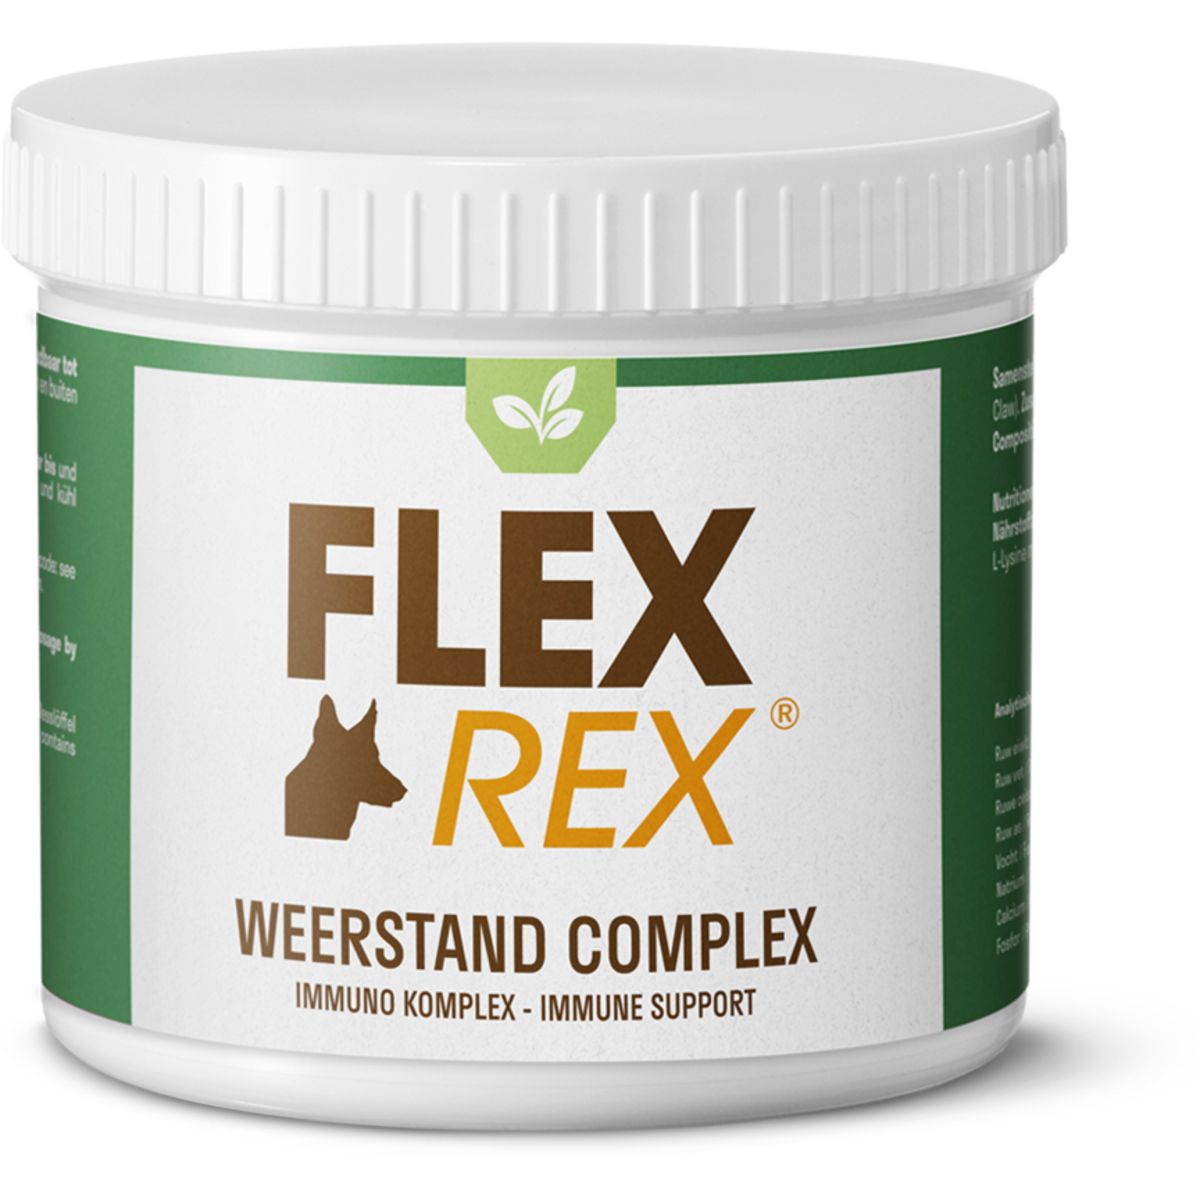 Flexrex Widerstandskomplex